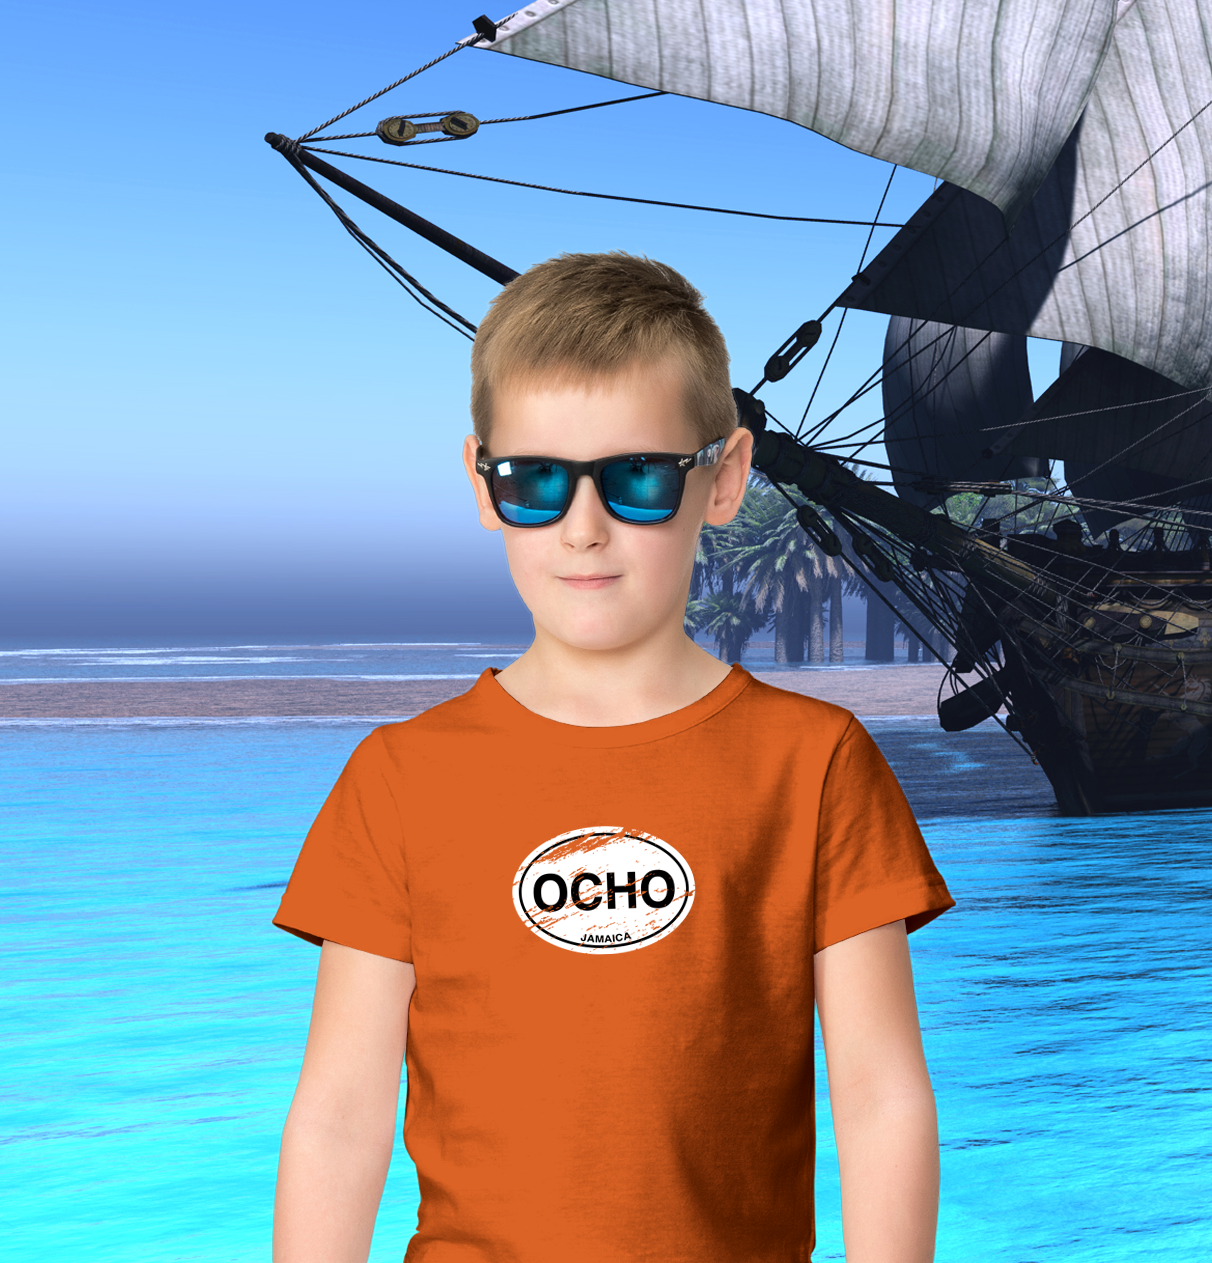 Ocho Rios Classic Youth T-Shirt - My Destination Location